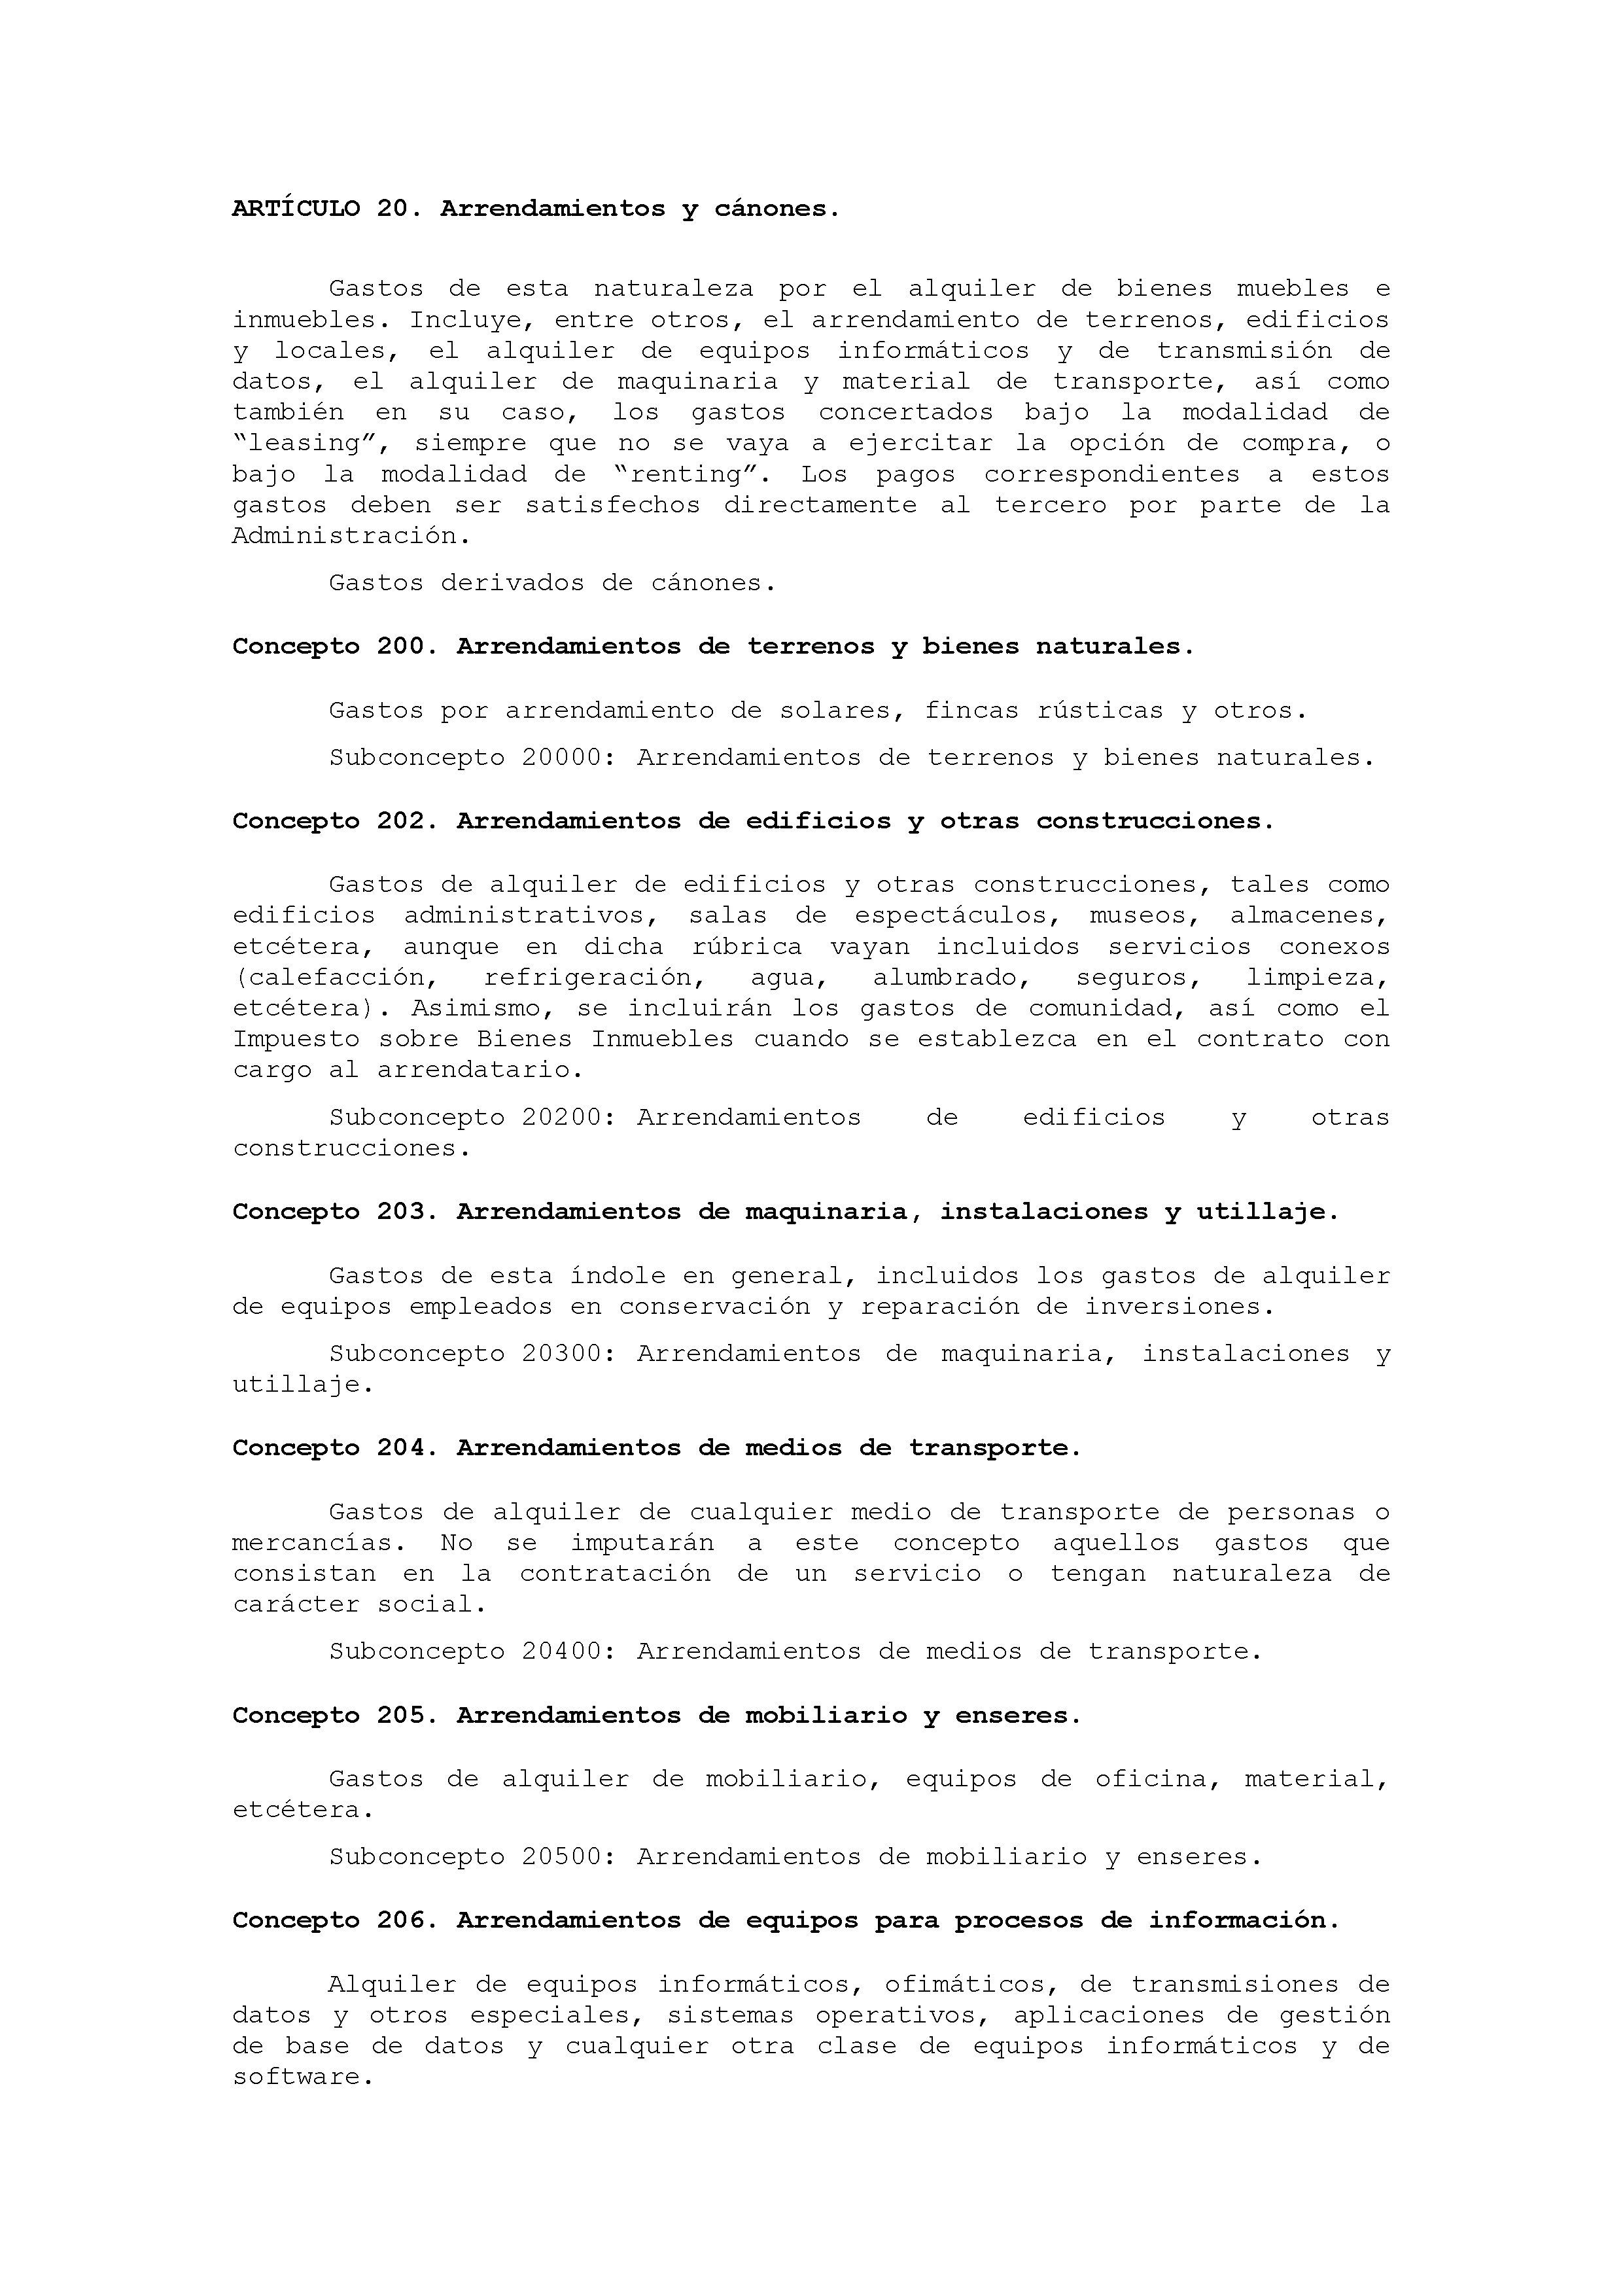 ANEXO IX CÓDIGO DE LA CLASIFICACIÓN ECONÓMICA DE LOS GASTOS PÚBLICOS Pag 15